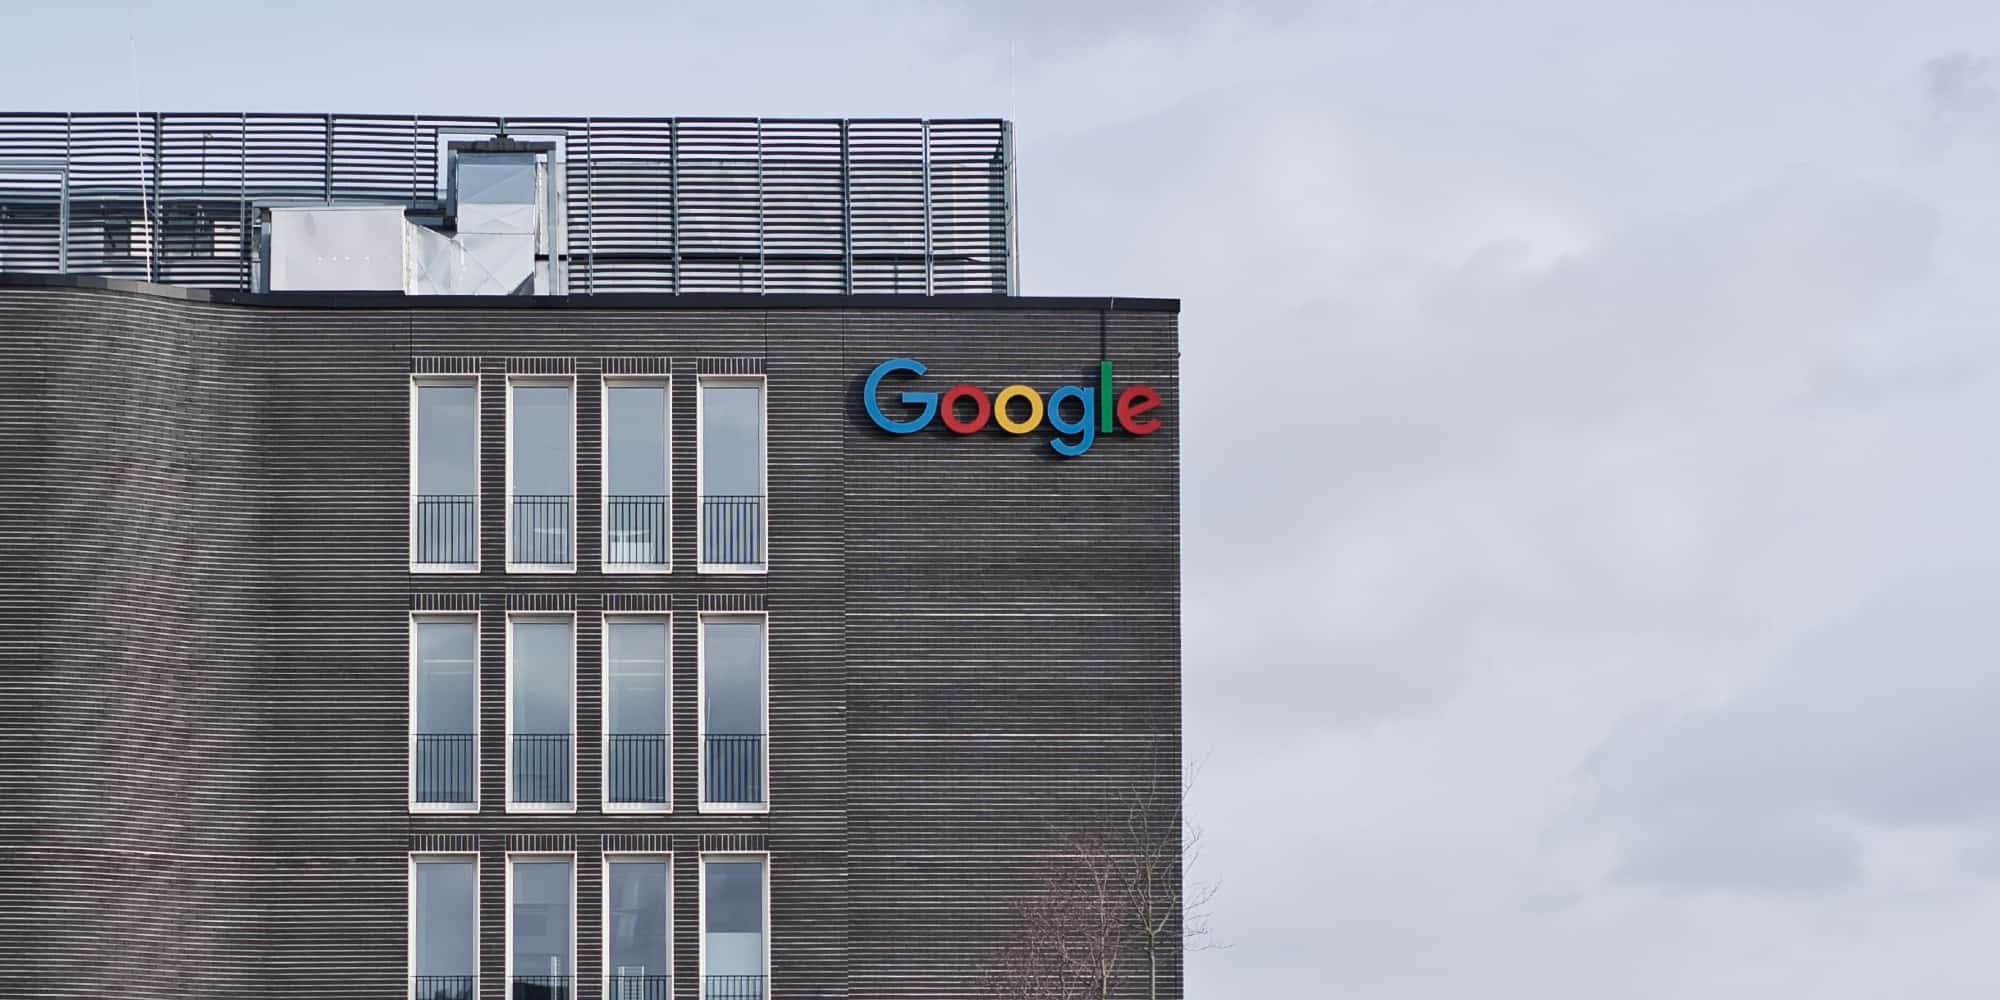 Τα γραφεία της Google